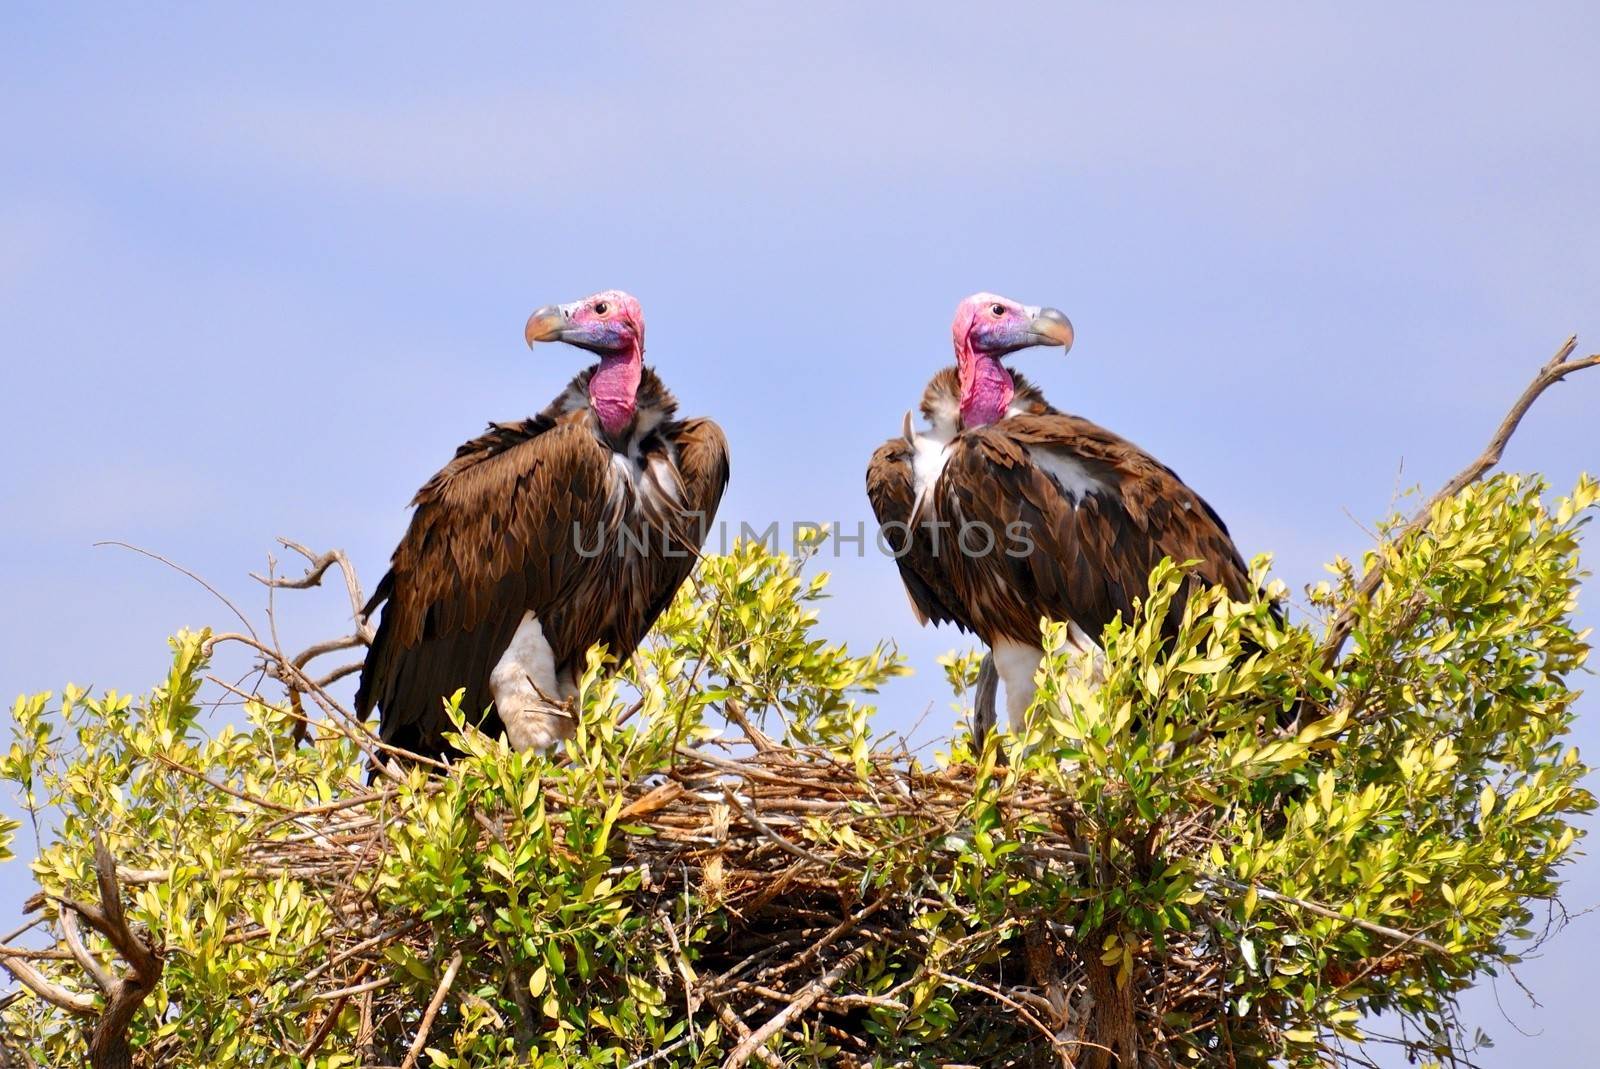 birds of Tanzania by moizhusein